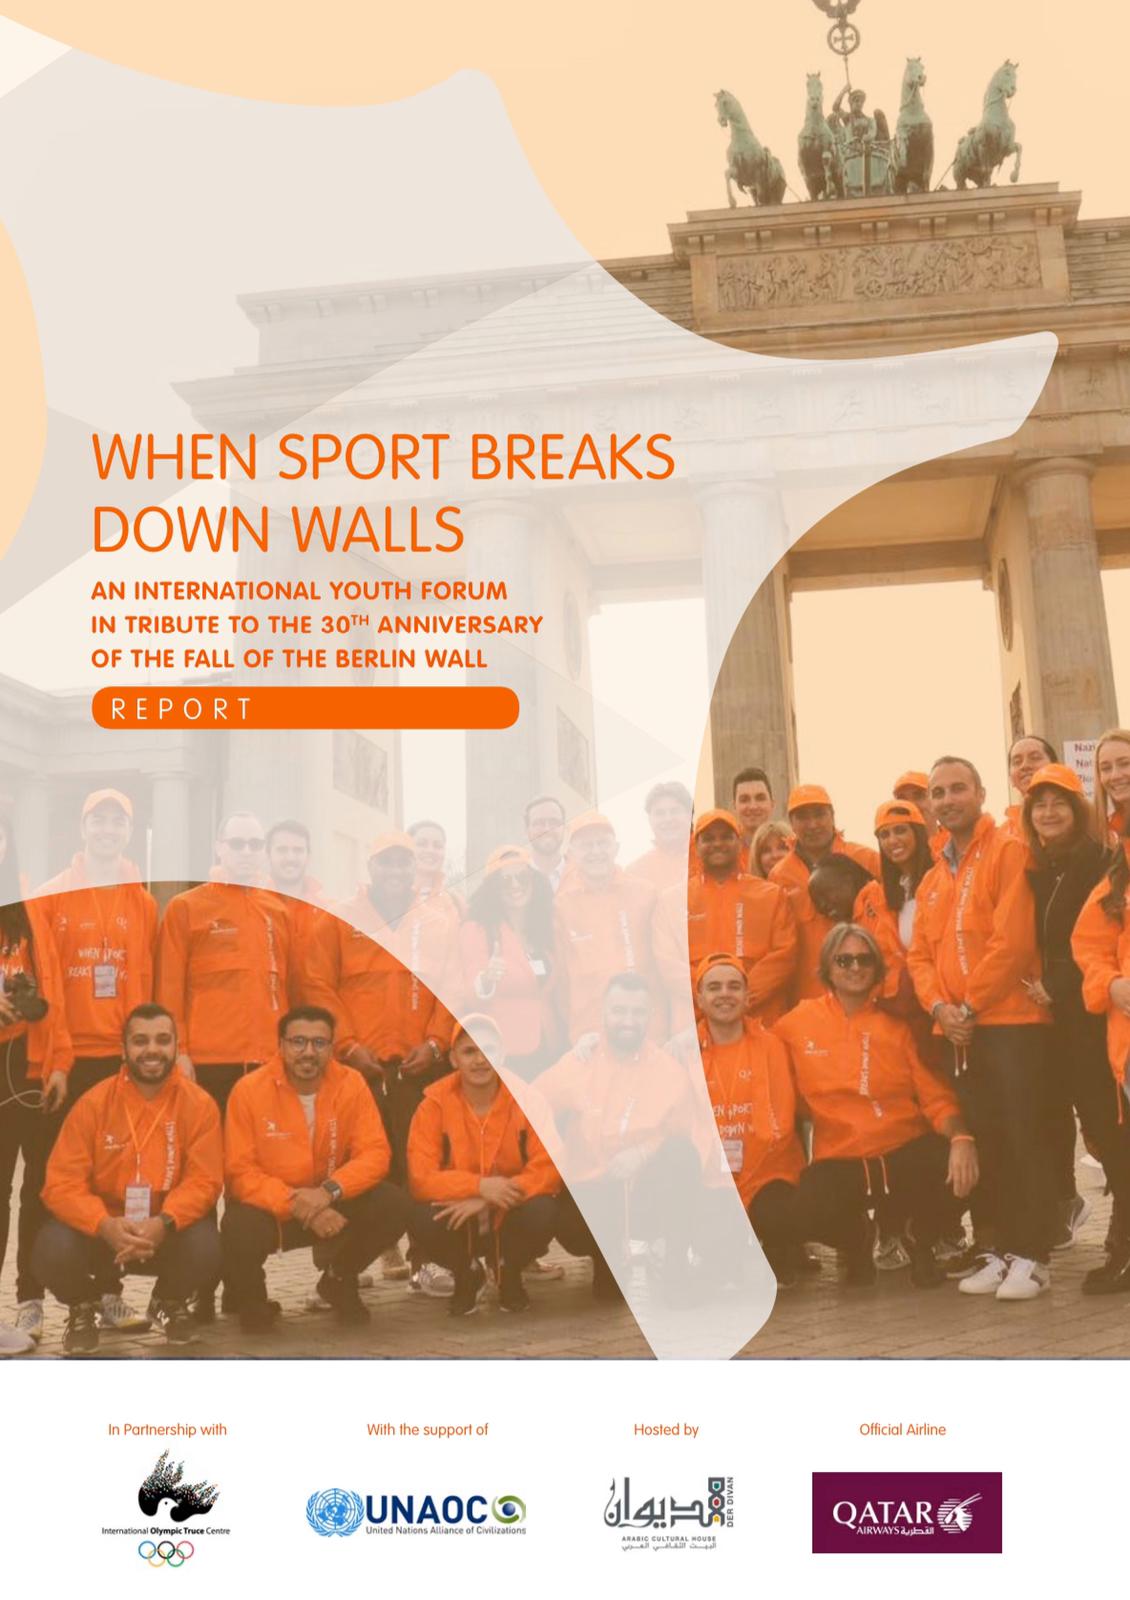 Save the Dream presenta il rapporto “When Sport Breaks Down Walls”